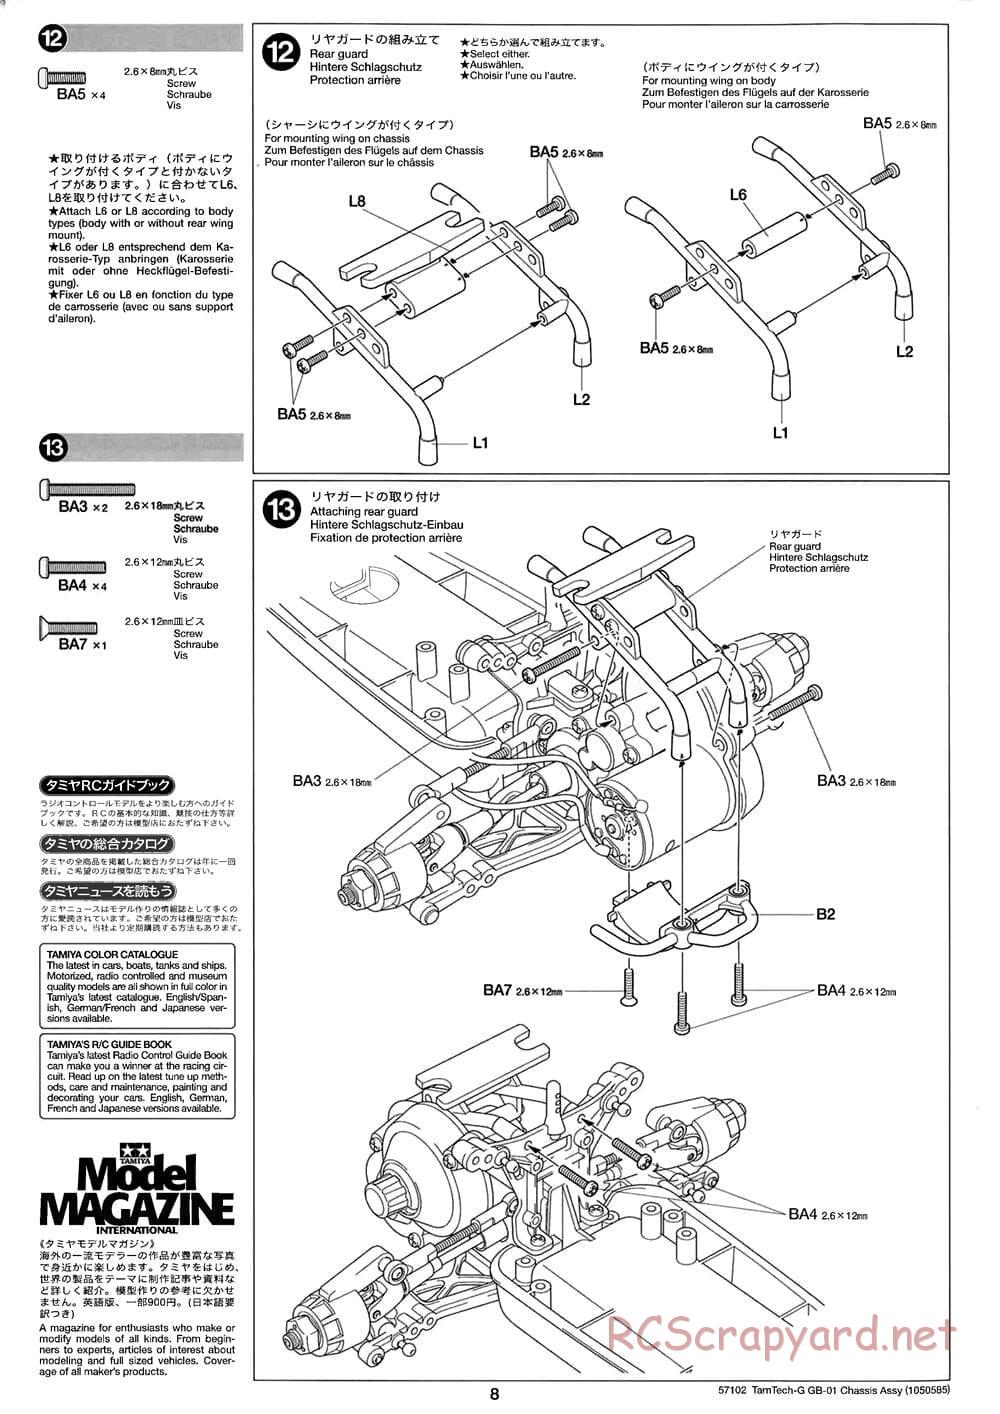 Tamiya - GB-01 Chassis - Manual - Page 8